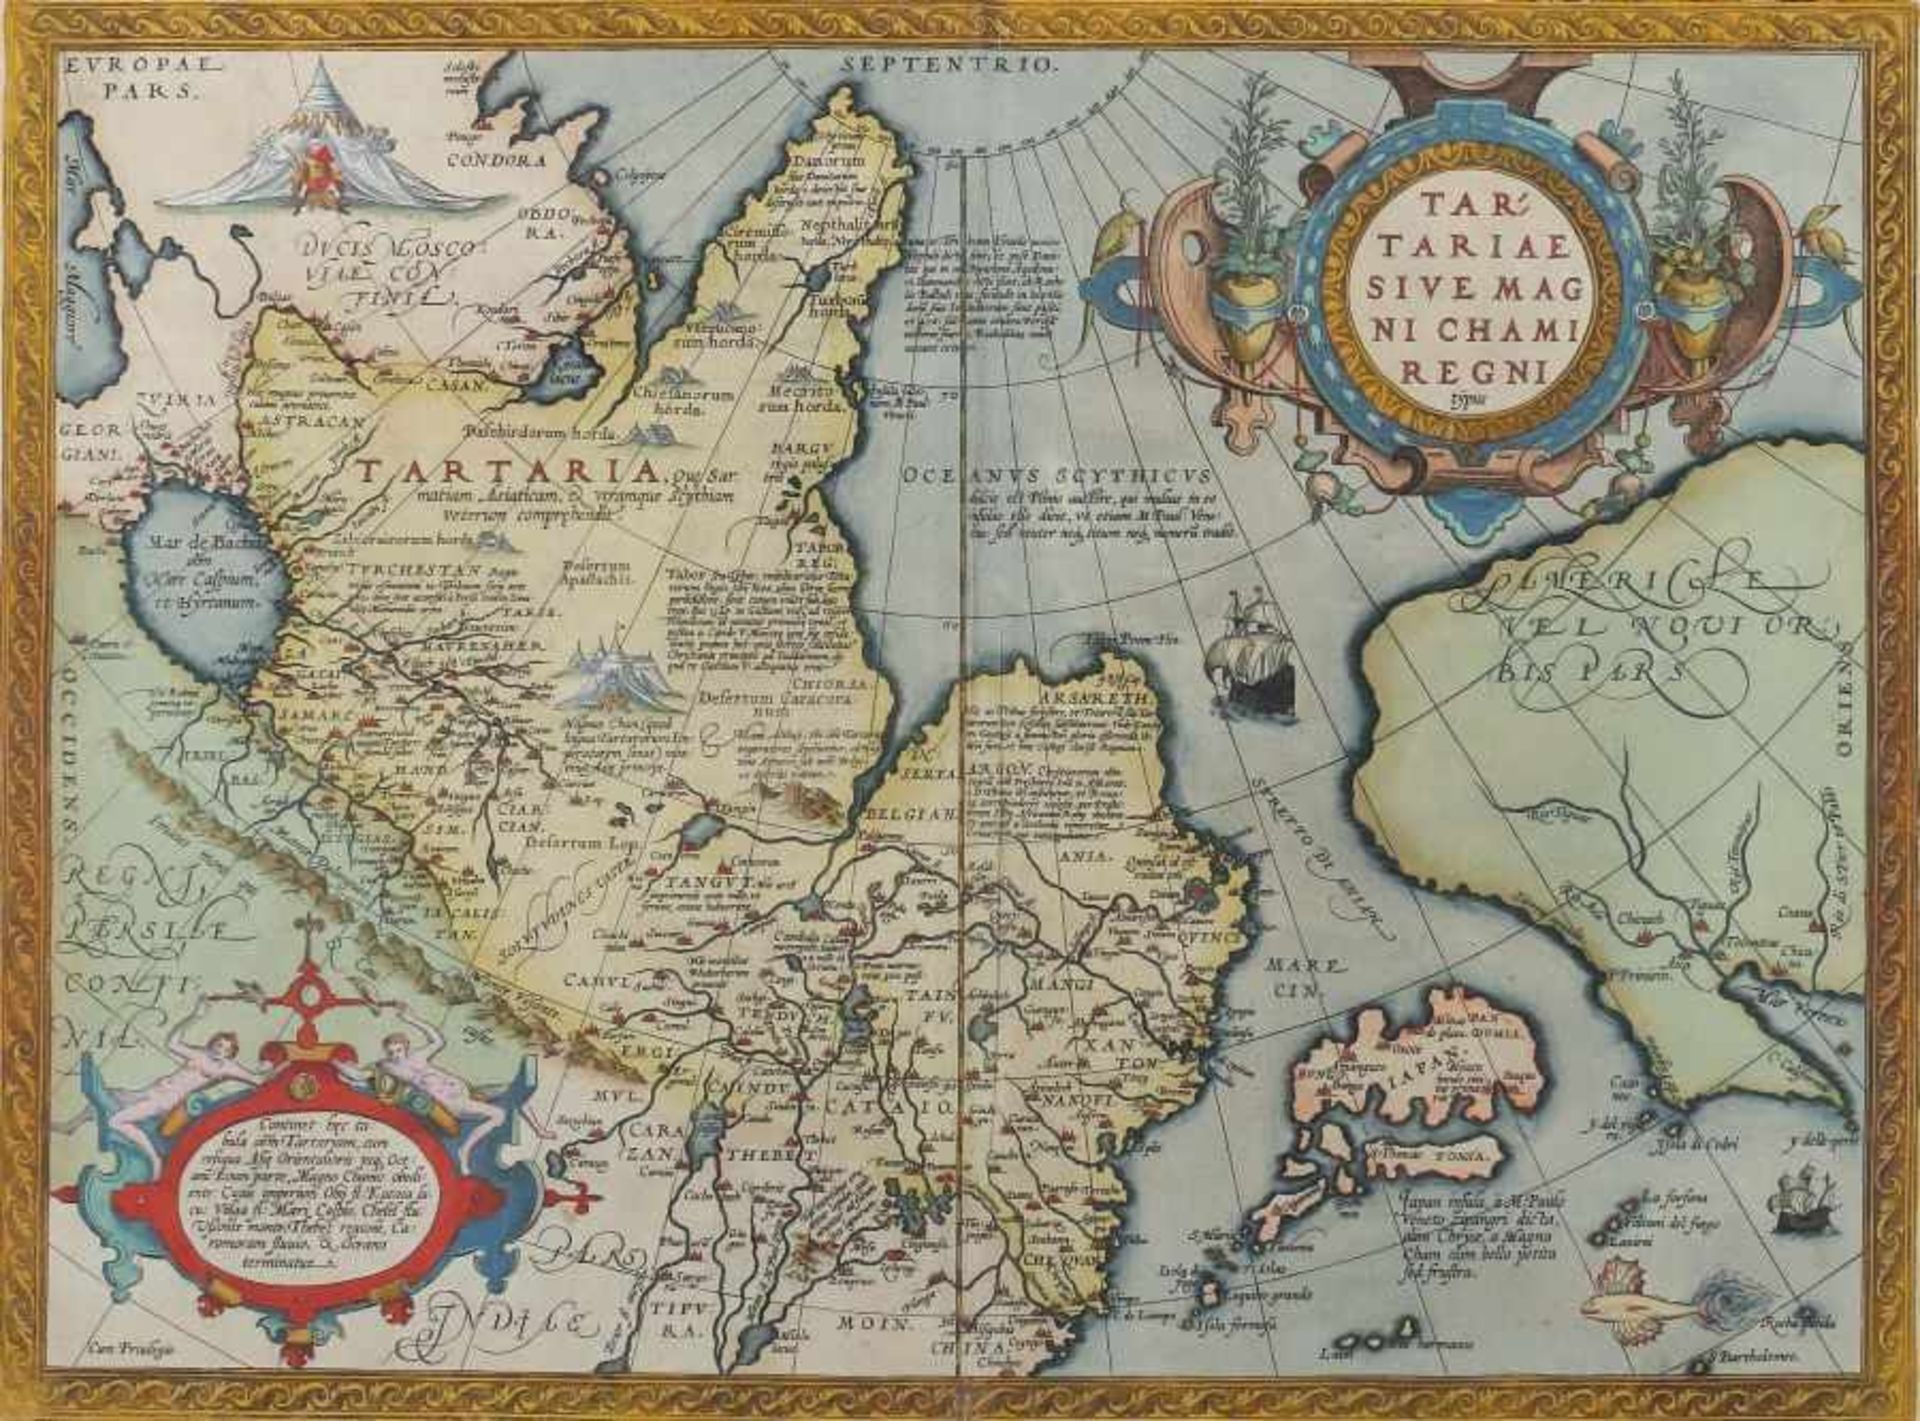 Ortelius, Abraham Antwerpen 1527 - 1598 ebenda, Kartograph und Geograph. "Tartariae sive magni chami